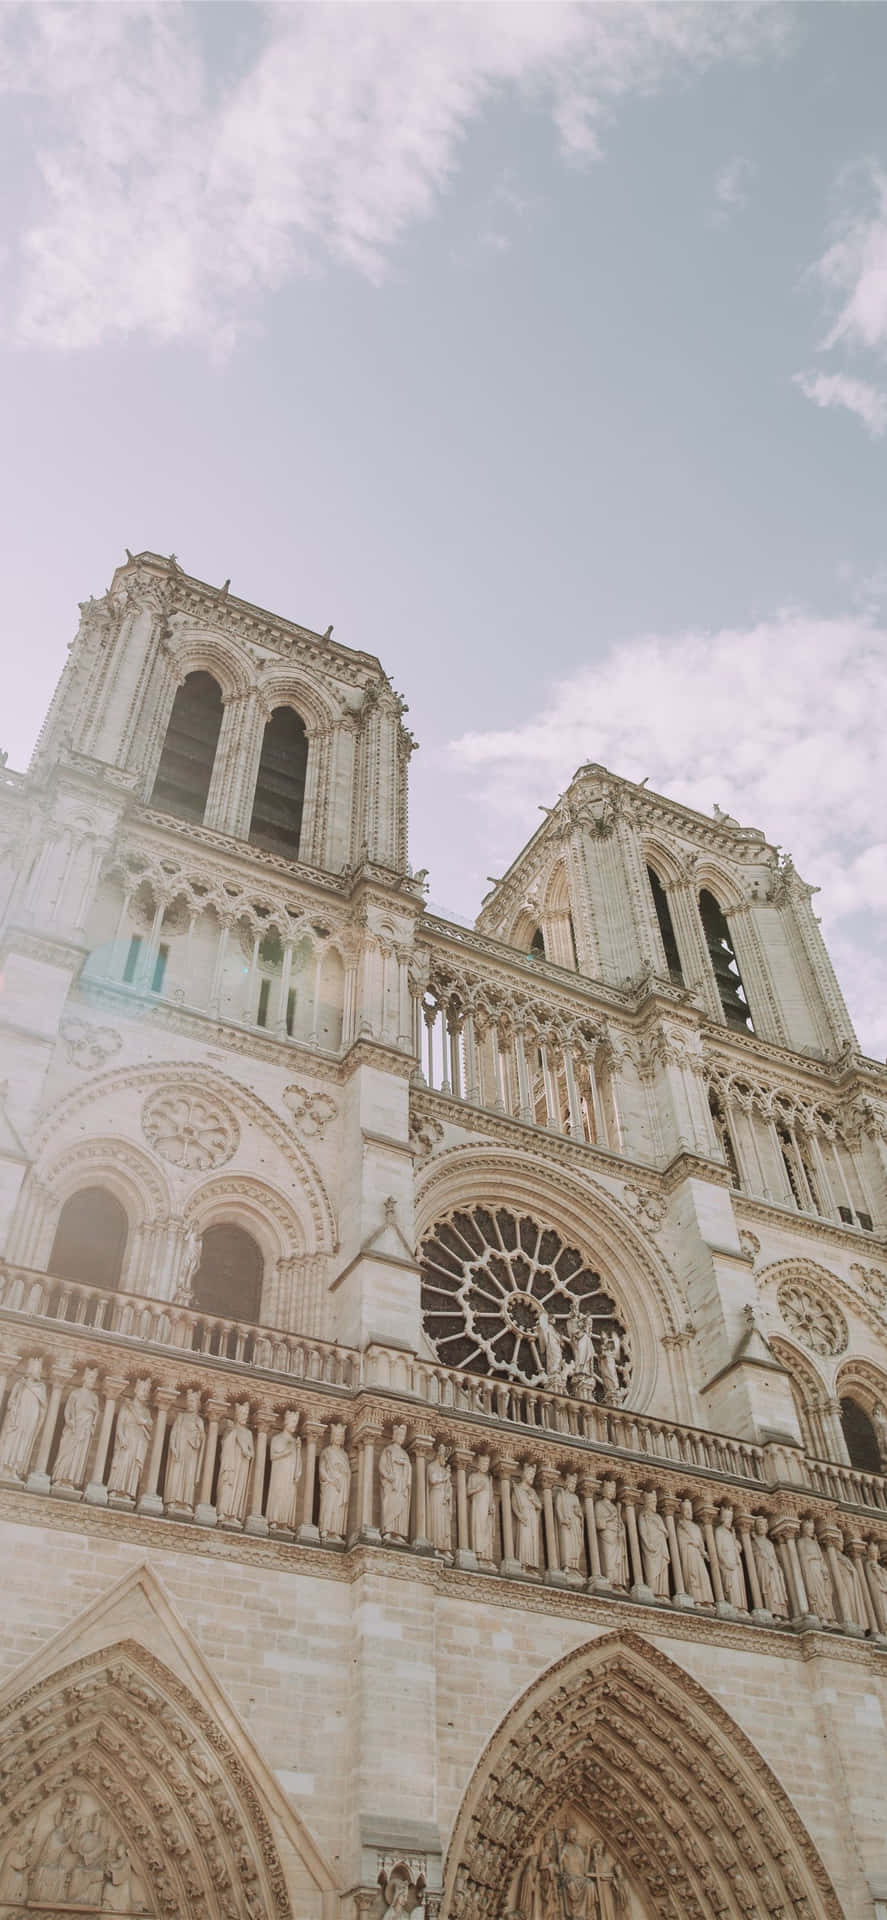 Kerne af Notre Dame katedralens frontarkitektur præger baggrunden. Wallpaper